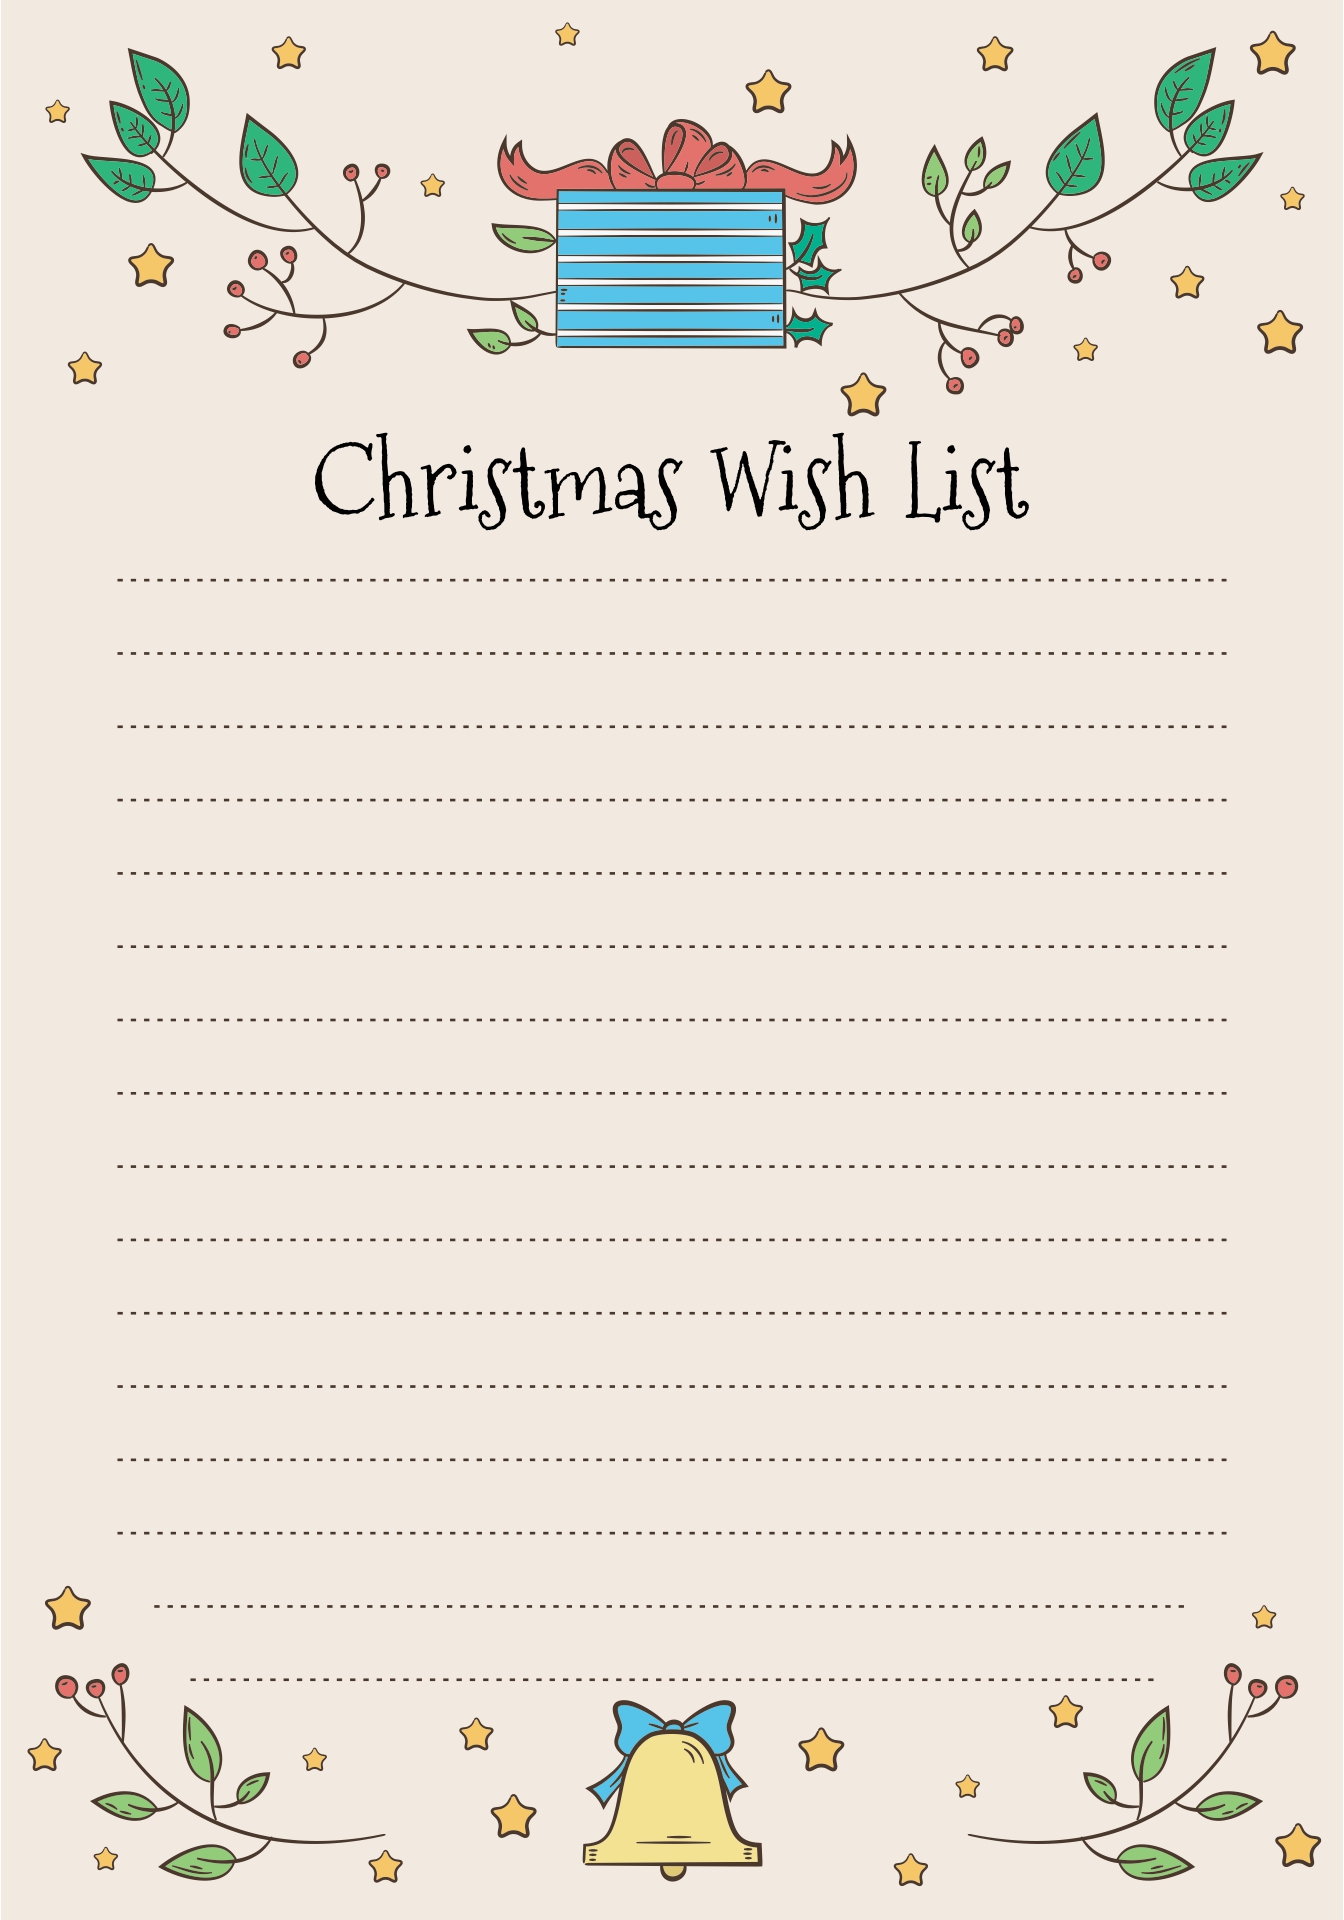 Printable Christmas Wish List Paper